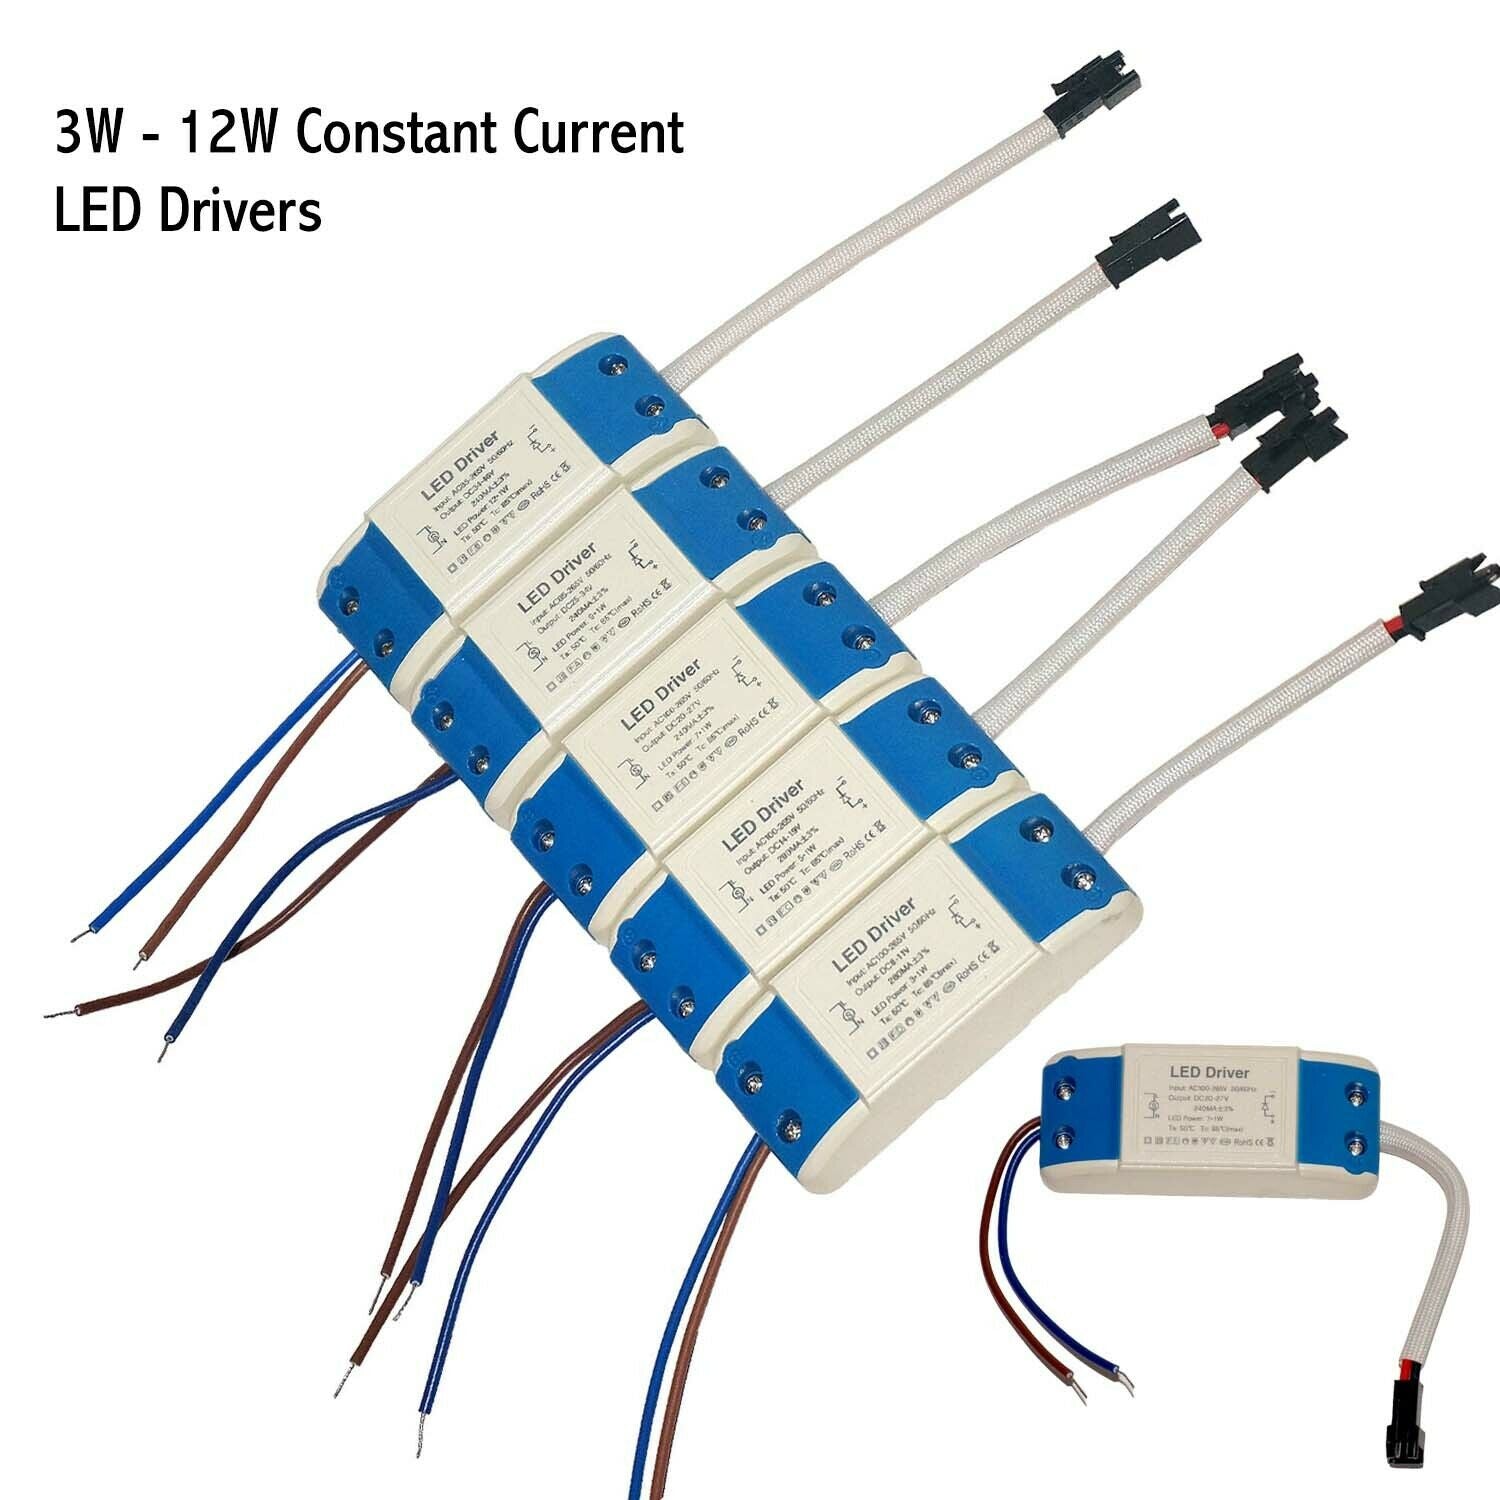 Blaues Gehäuse 12W LED-Treiber Netzteil Transformator AC - 240V - DC Konstantstrom LED-Treiber